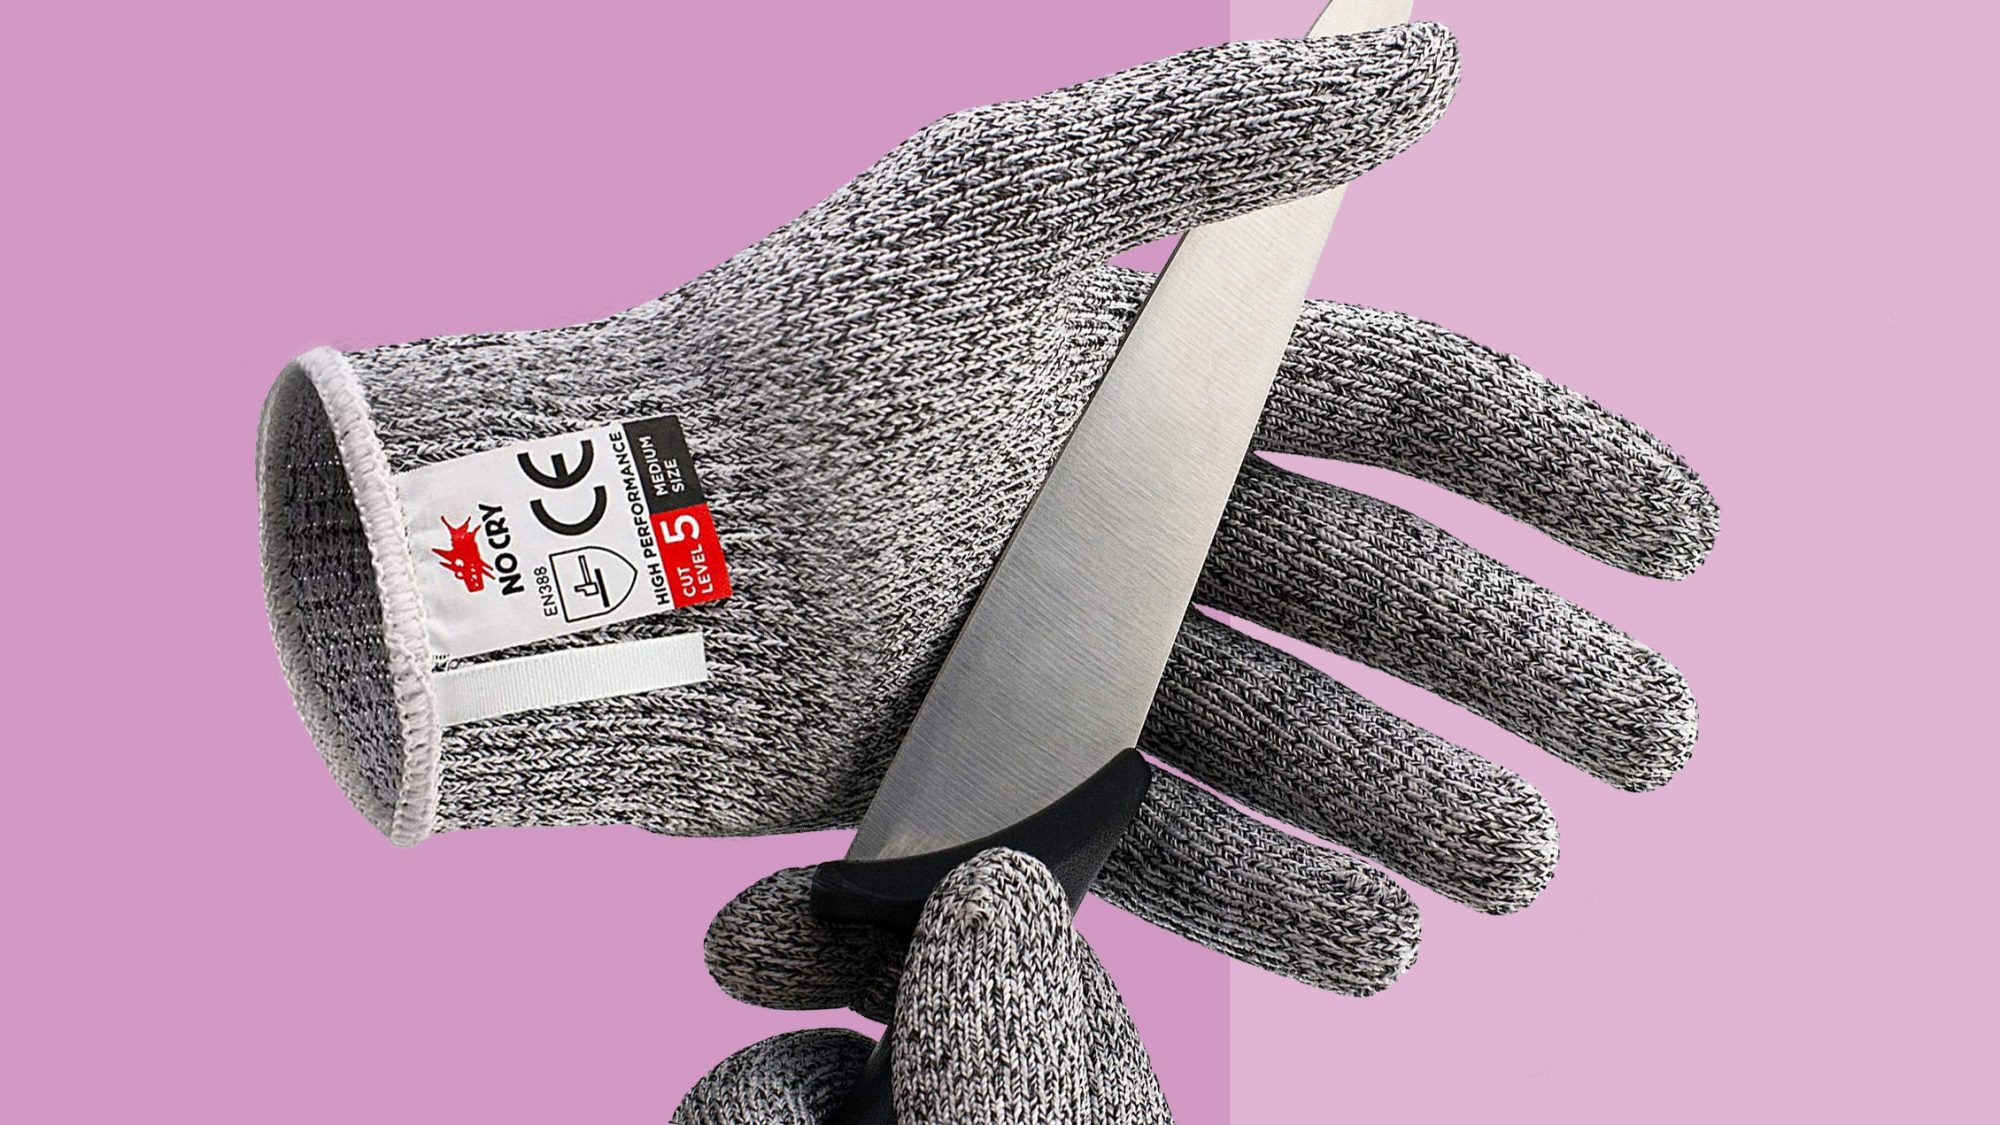 Више од 9.000 купаца заклиње се овим рукавицама отпорним на резање како би заштитили прсте приликом сецкања